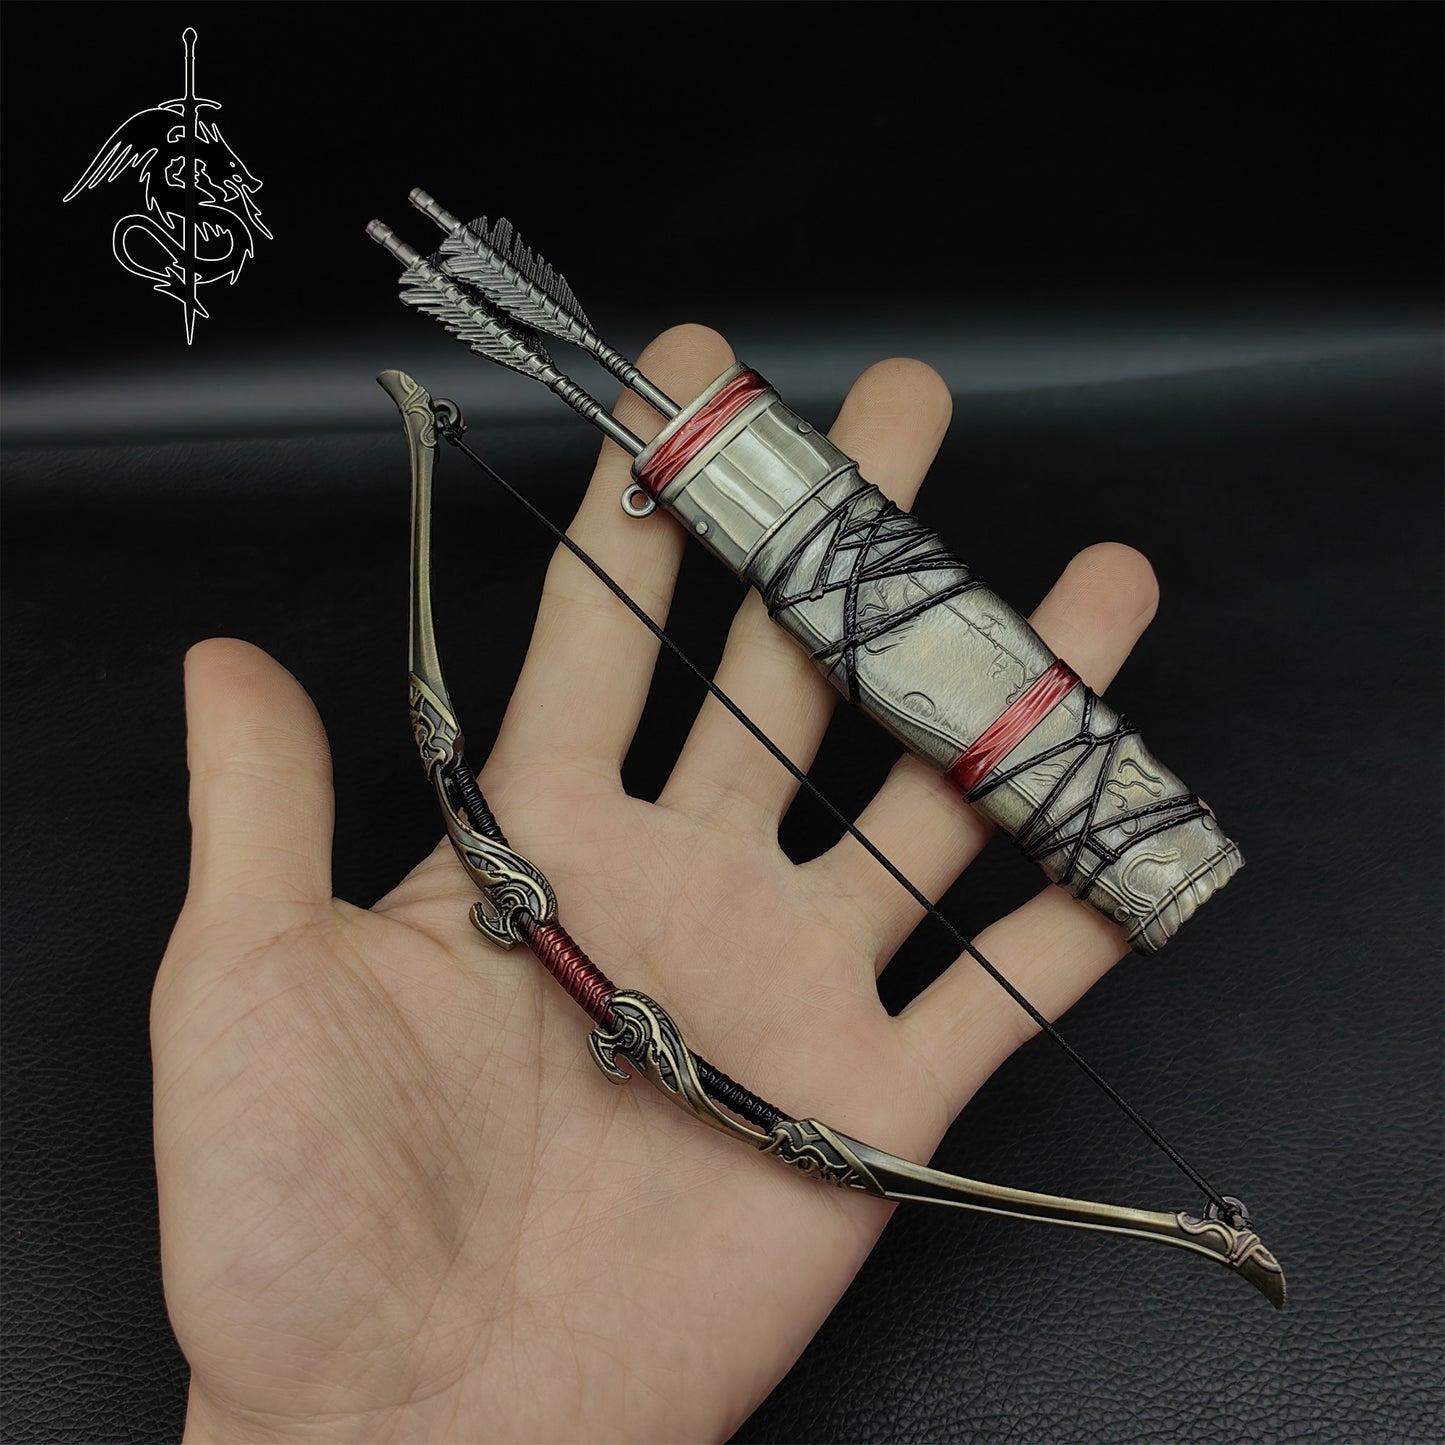 Metal GOW Kratos Classical Weapon Miniatures